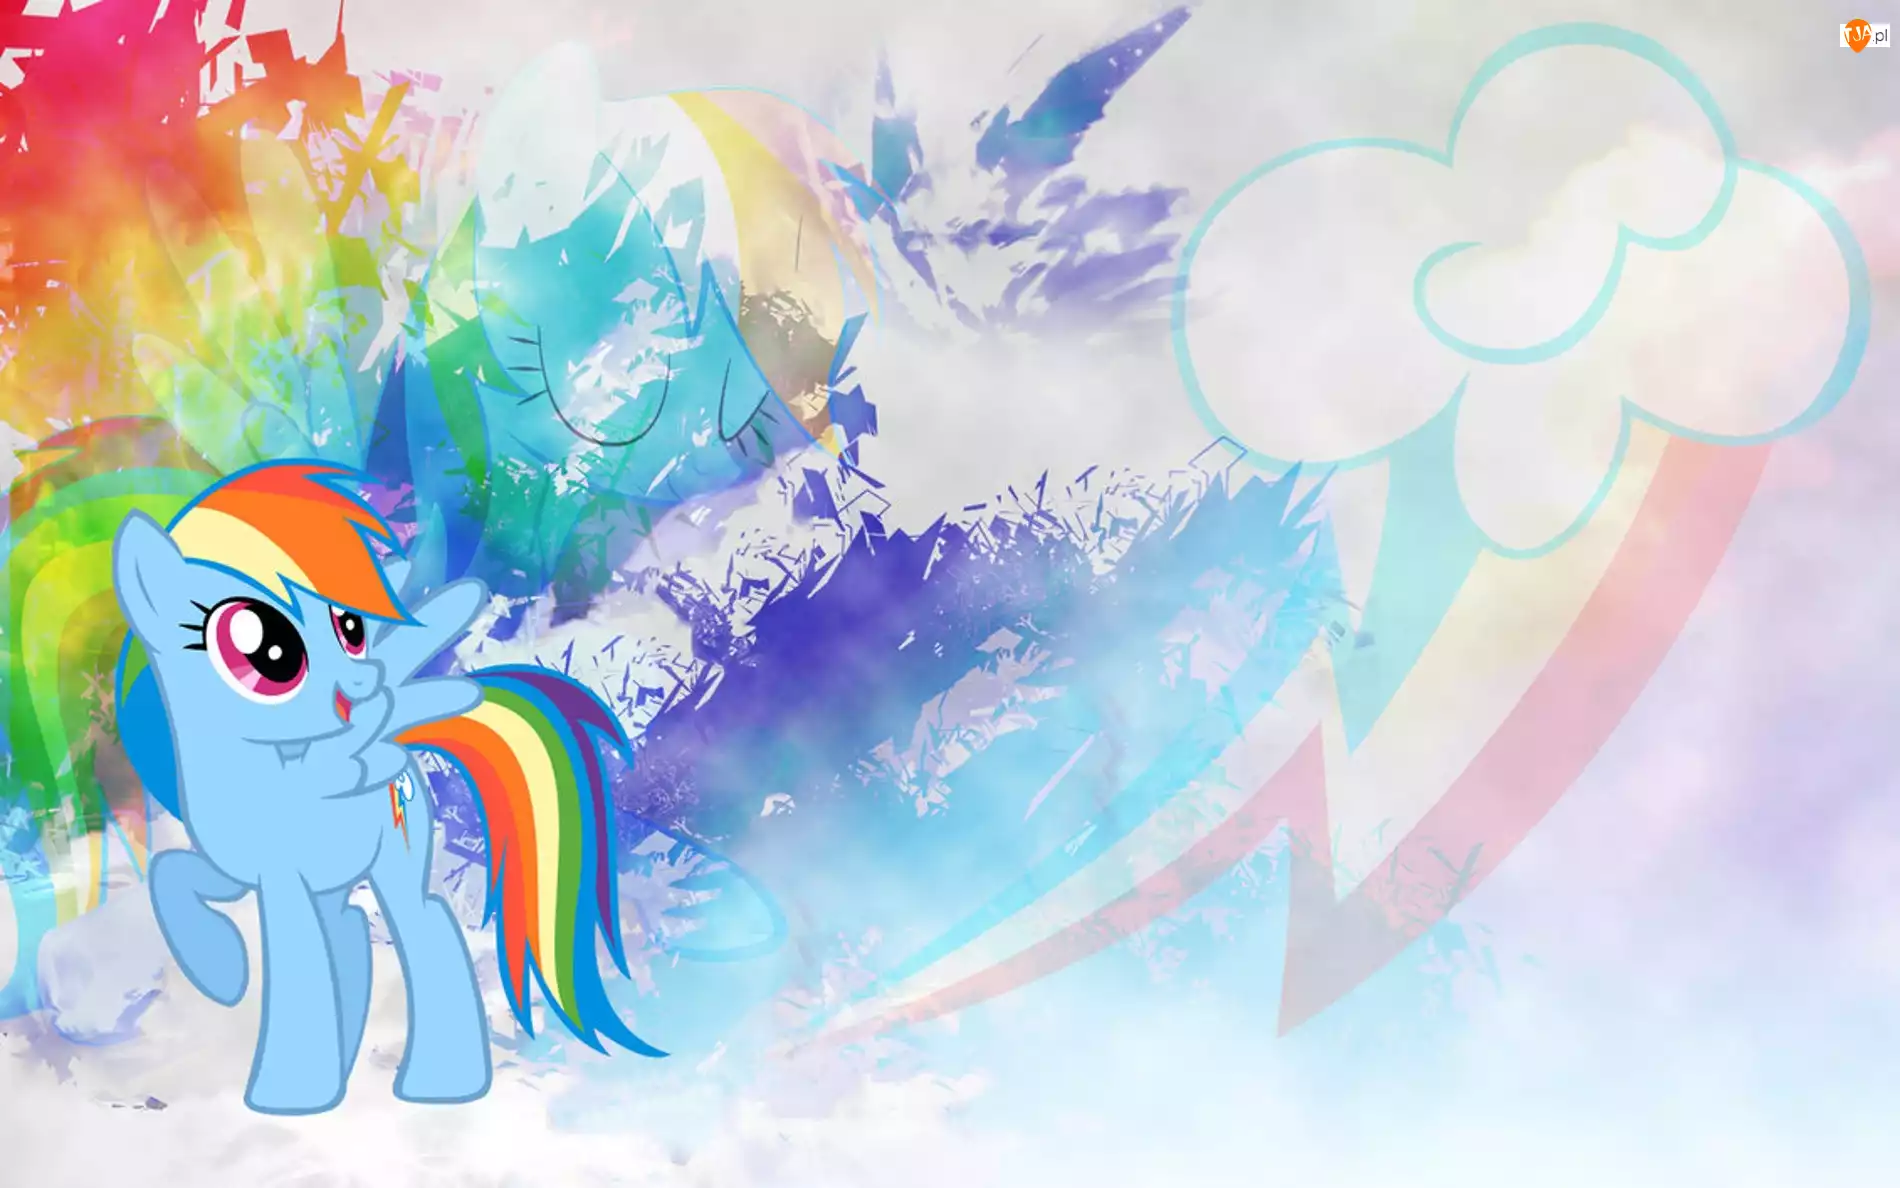 Znaczek, My Little Pony, Rainbow Dash